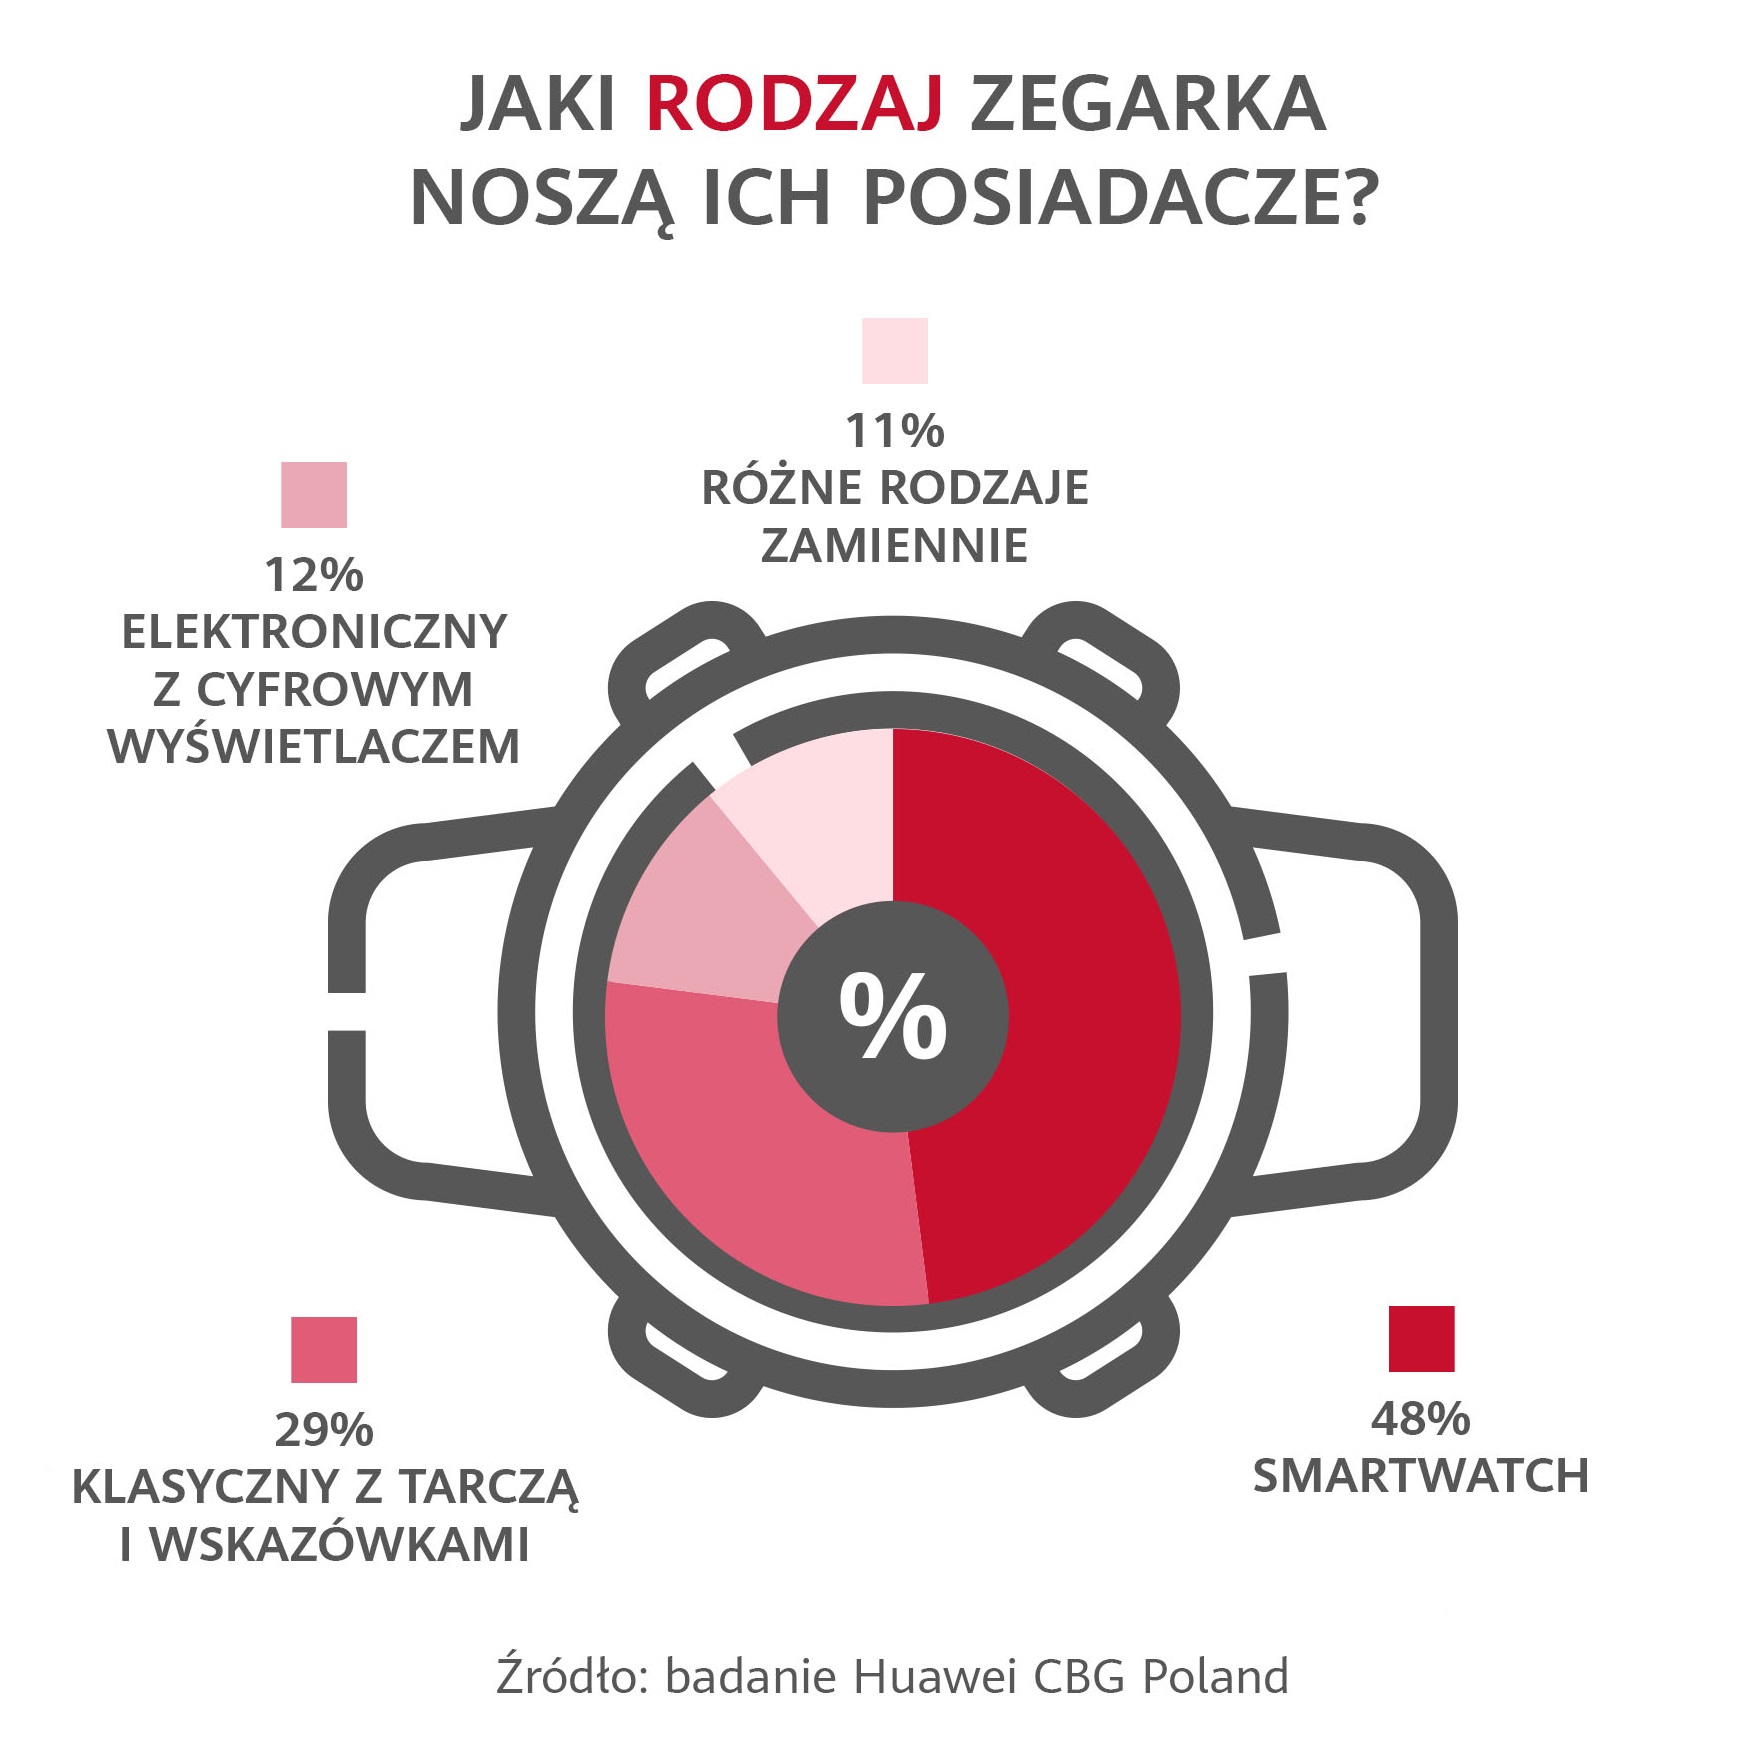 infografika Huawei  Jaki rodzaj zegarka noszÄ ich posiadacze